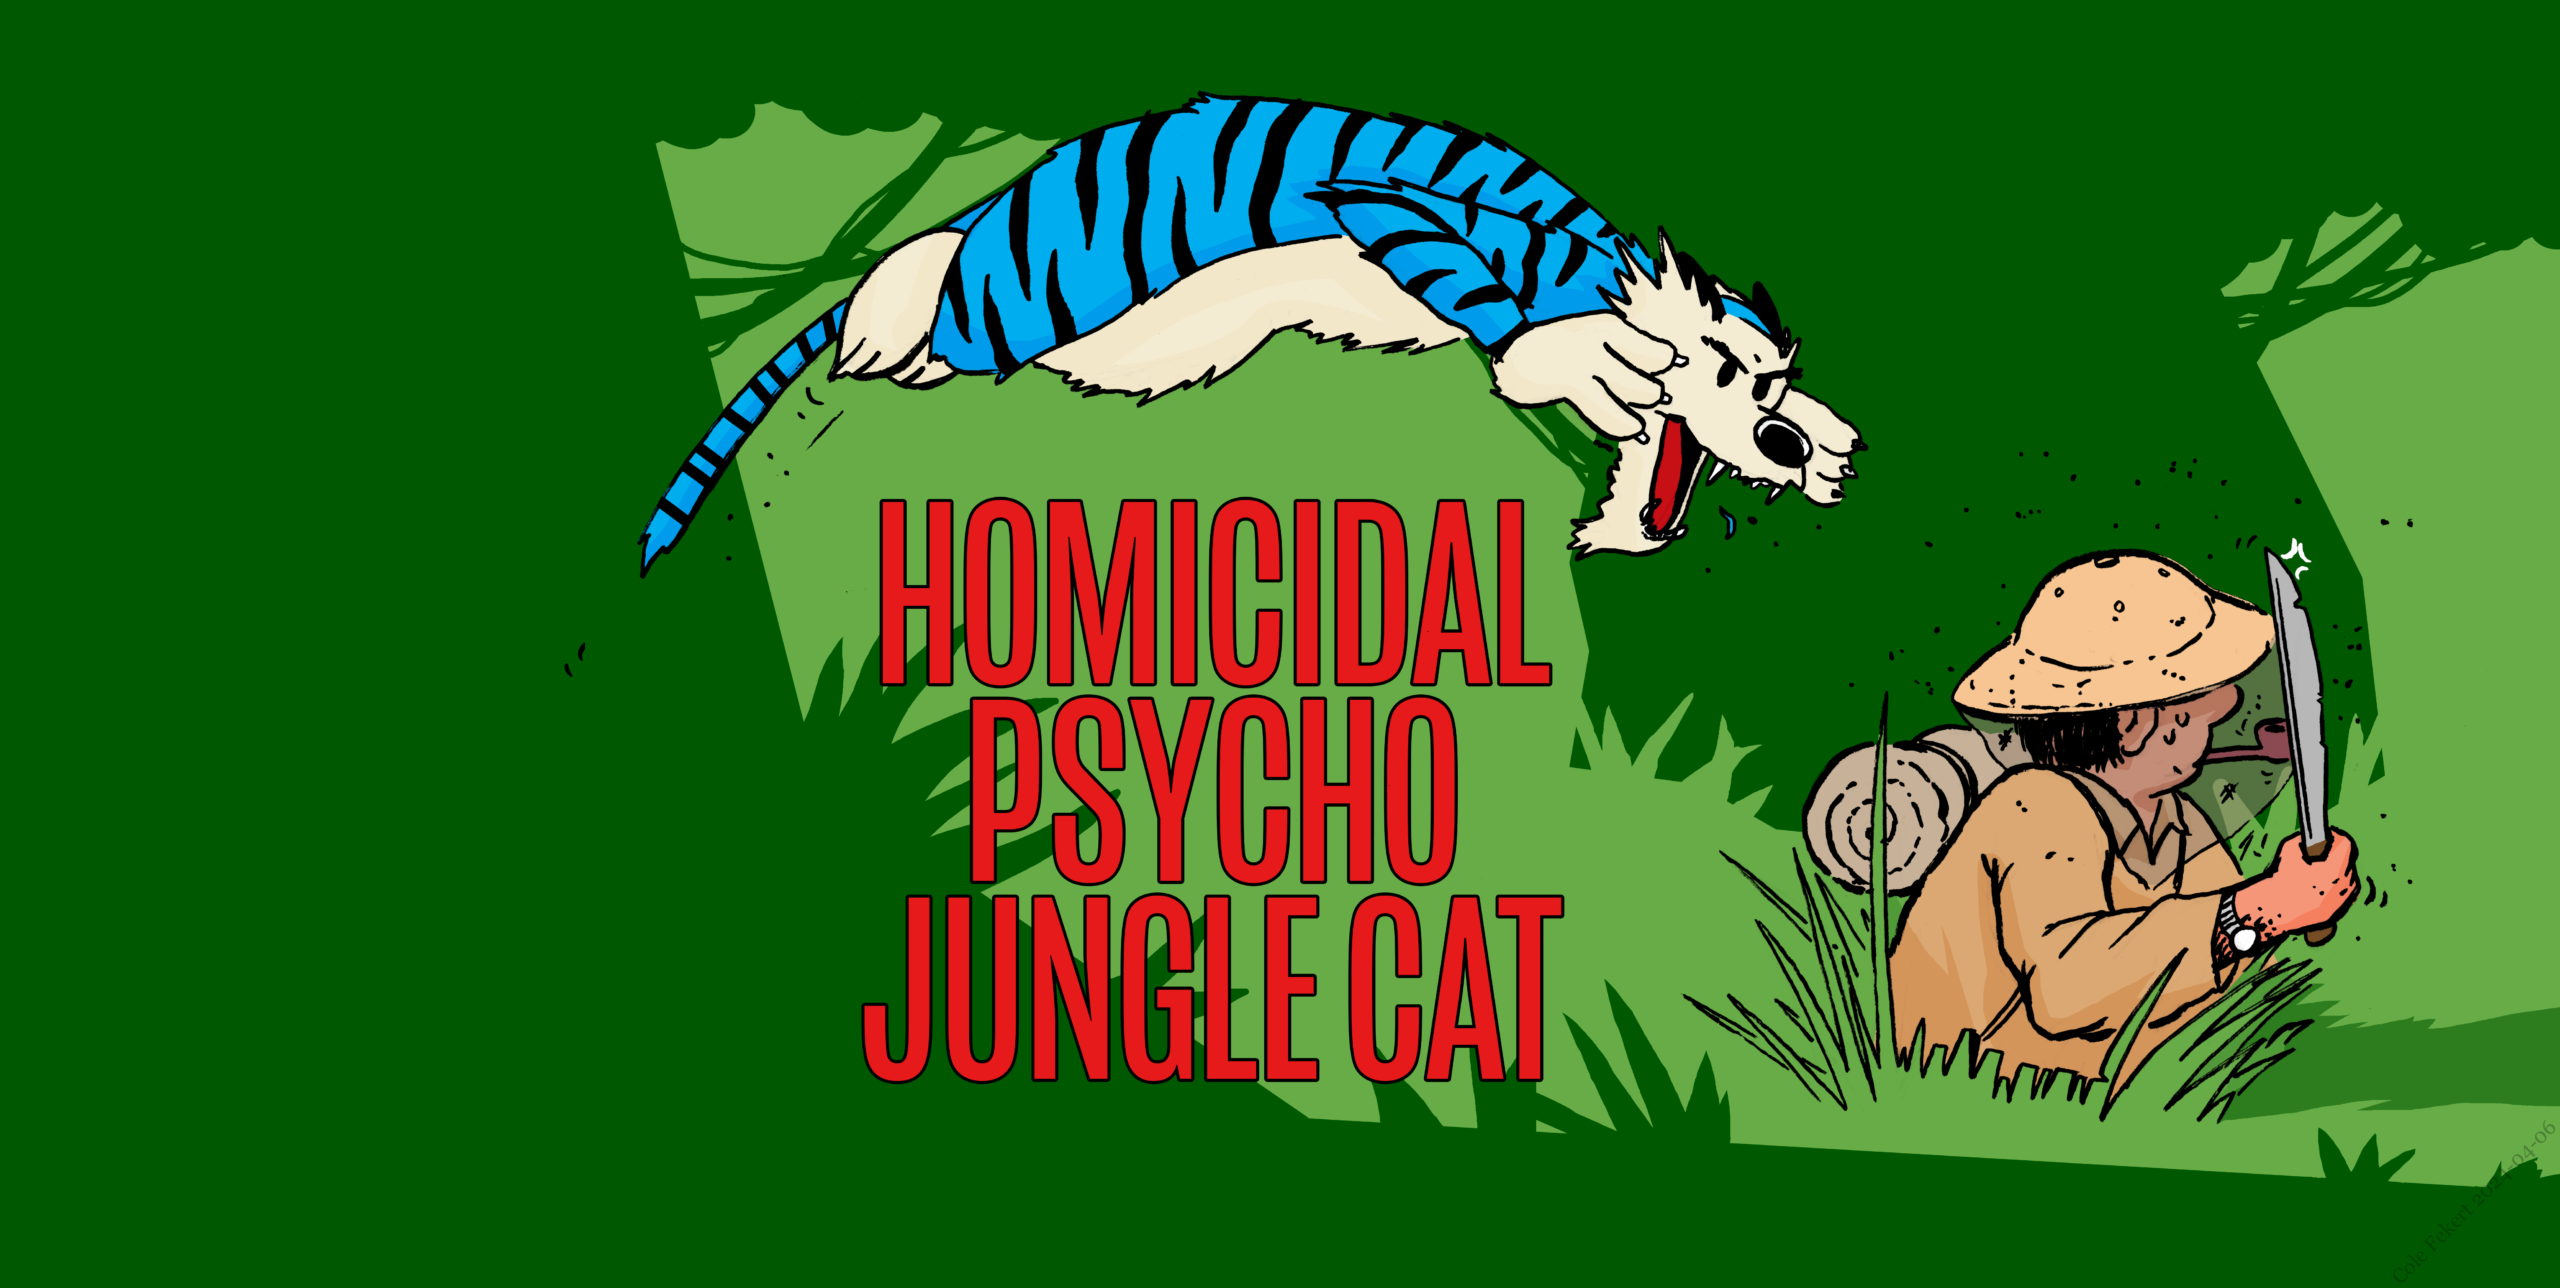 HOMICIDAL PSYCHO JUNGLE CAT